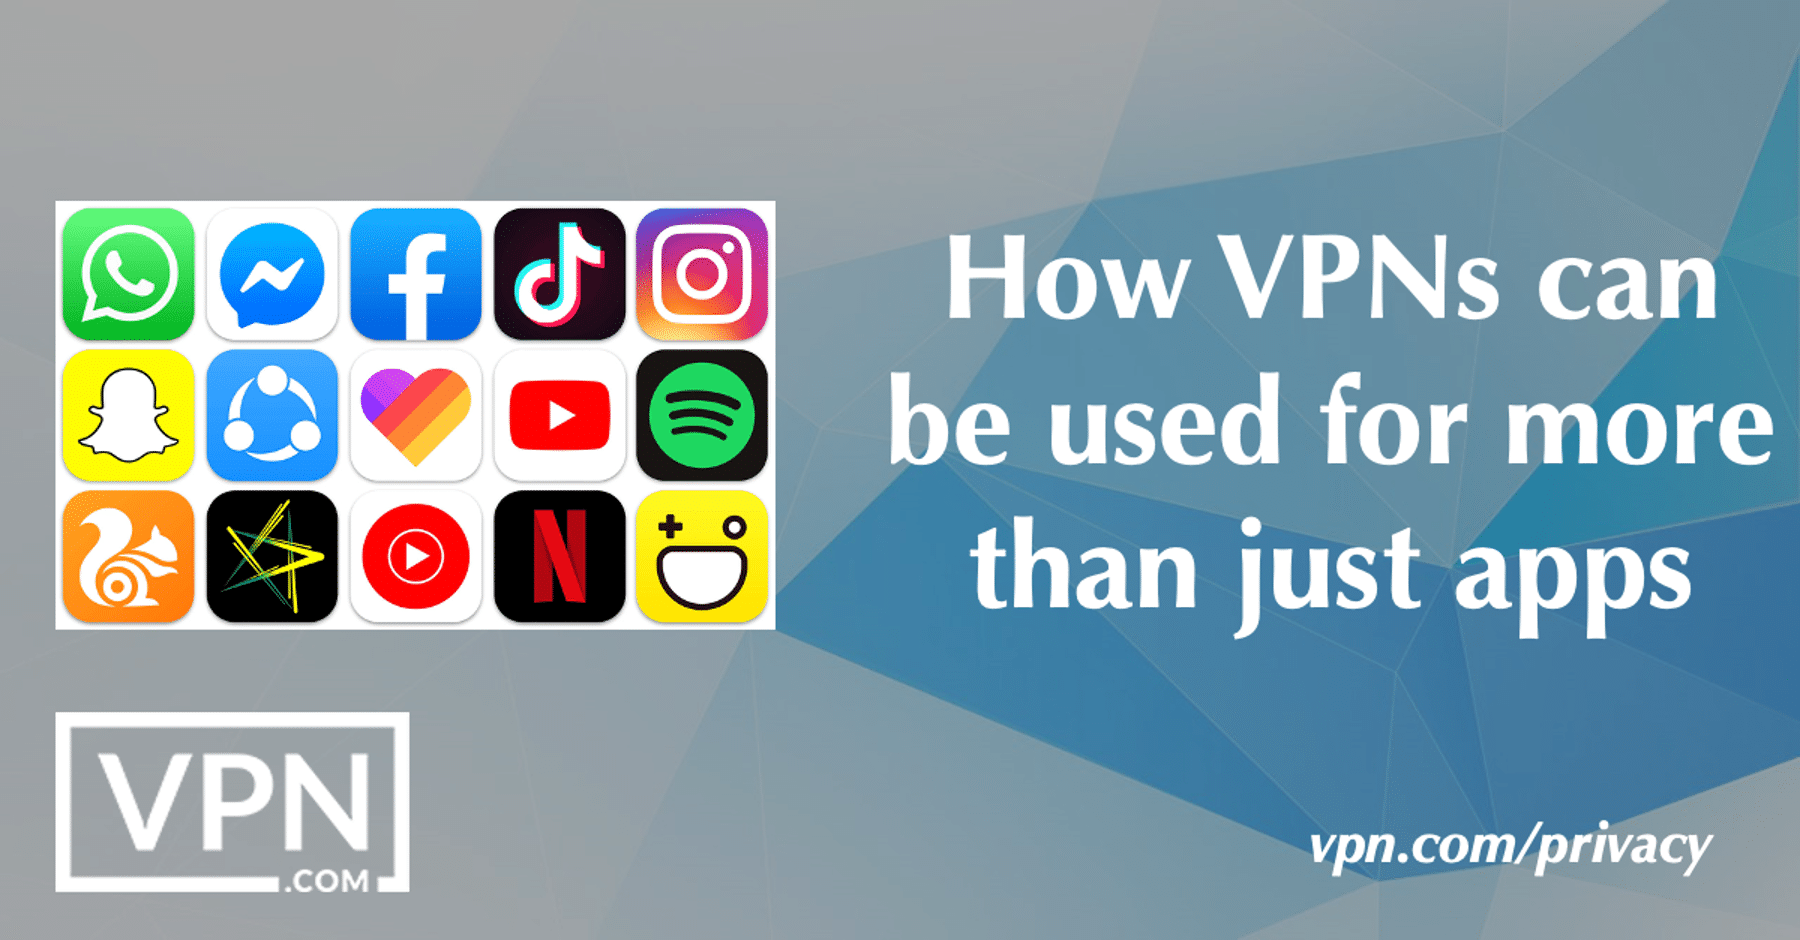 Hoe VPN's voor meer dan alleen apps kunnen worden gebruikt